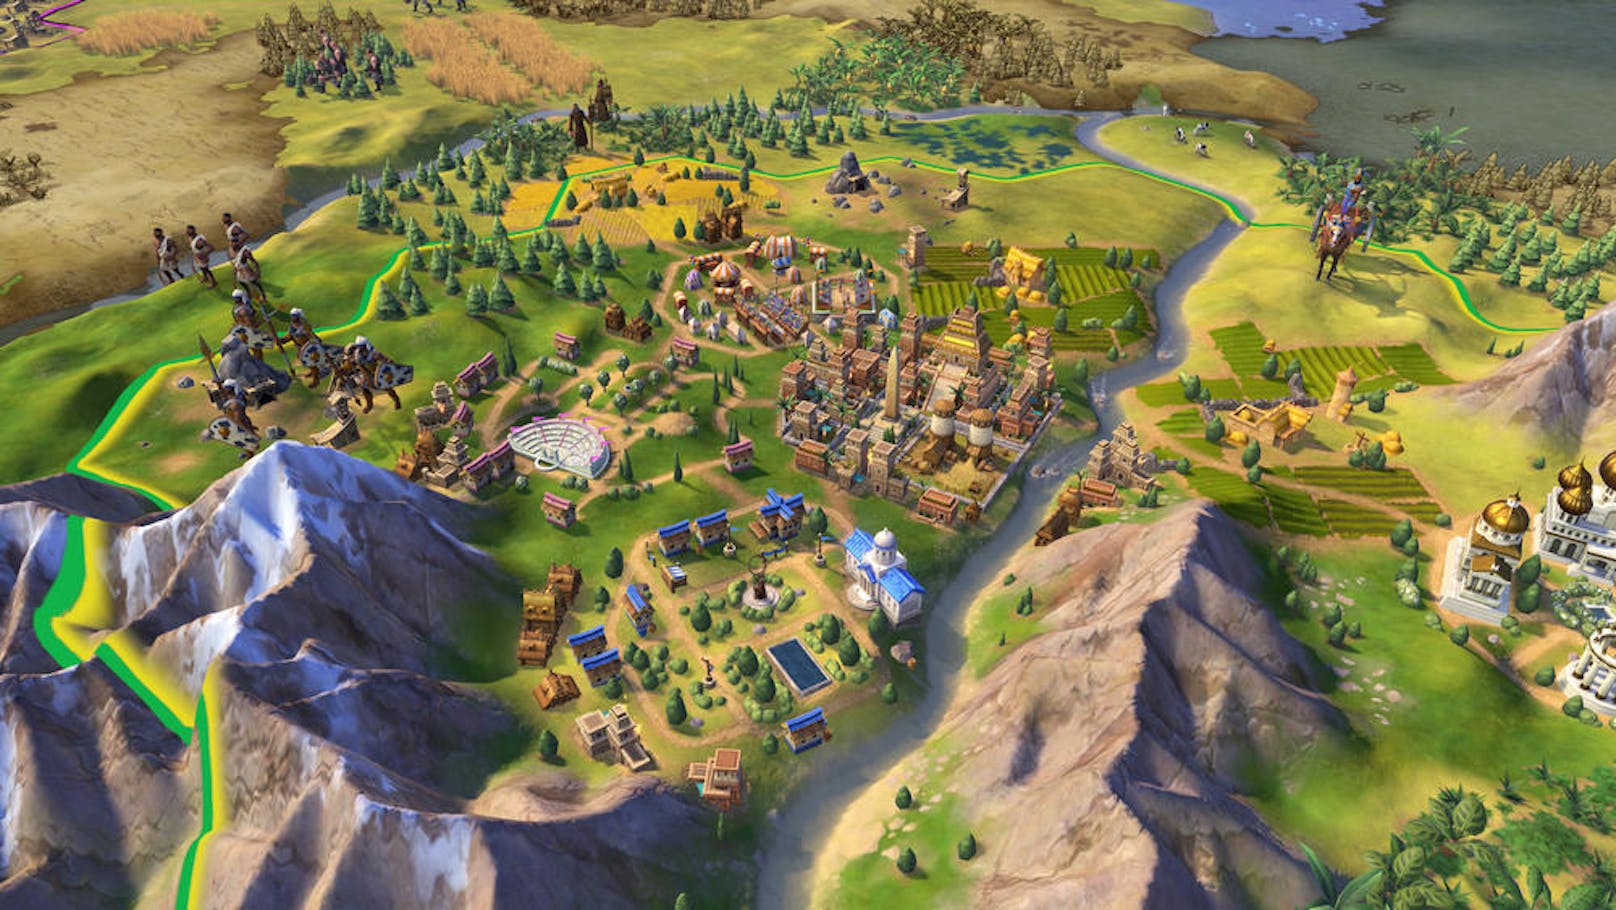 Ist die Startposition an einer Küste gelegen, wird der Spieler dadurch regelrecht eingesperrt, da Städte in der Nähe einer gegnerischen Hauptstadt meist sofort abfallen.